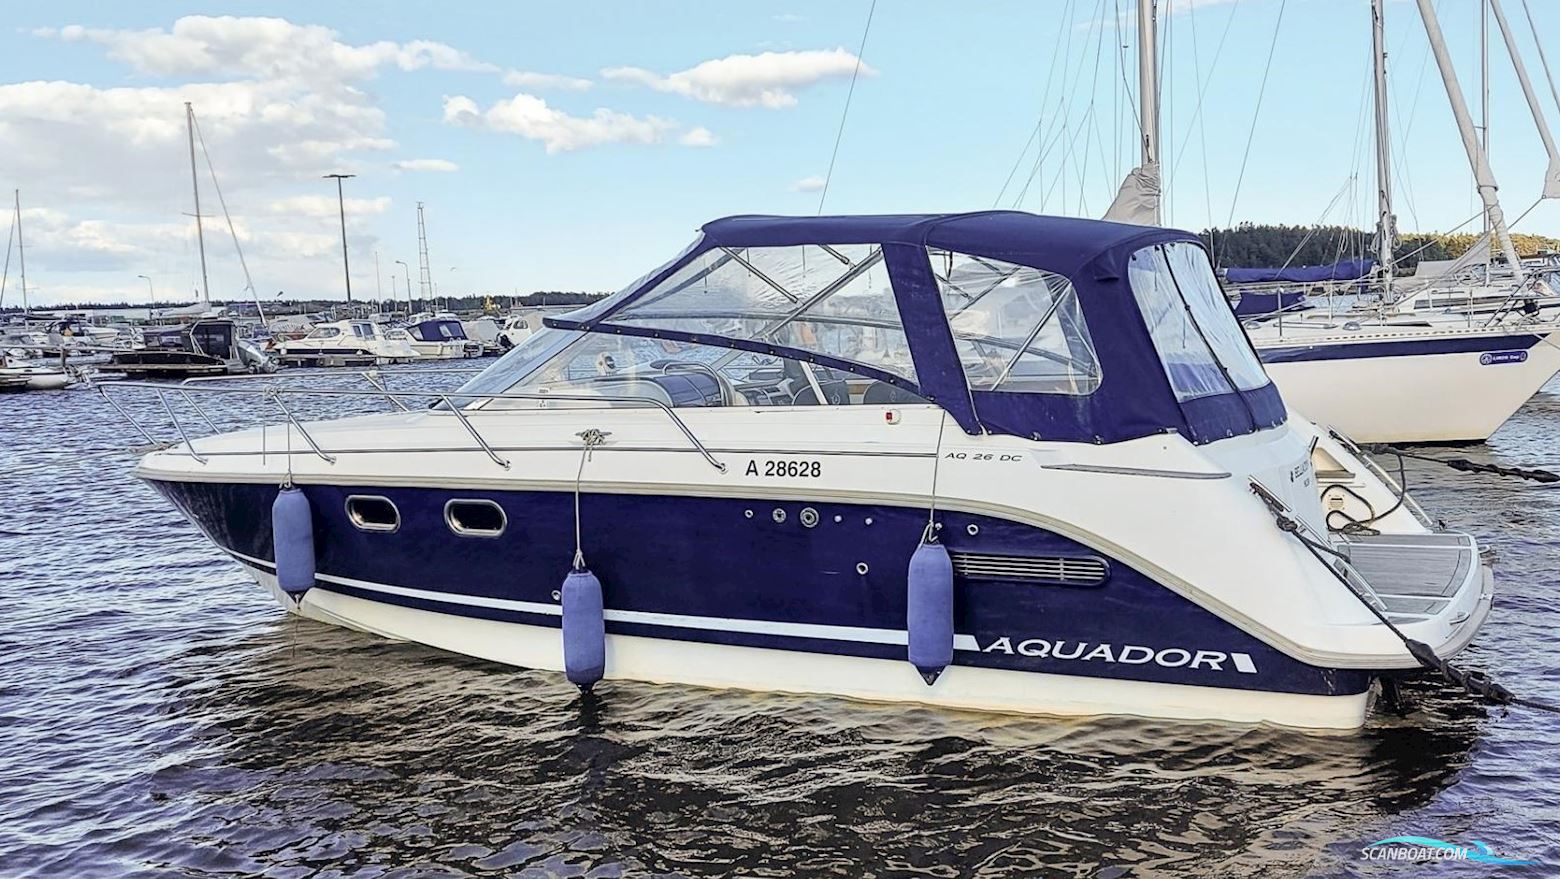 Aquador 26 DC Motorbåt 2003, med Volvo Penta motor, Sverige